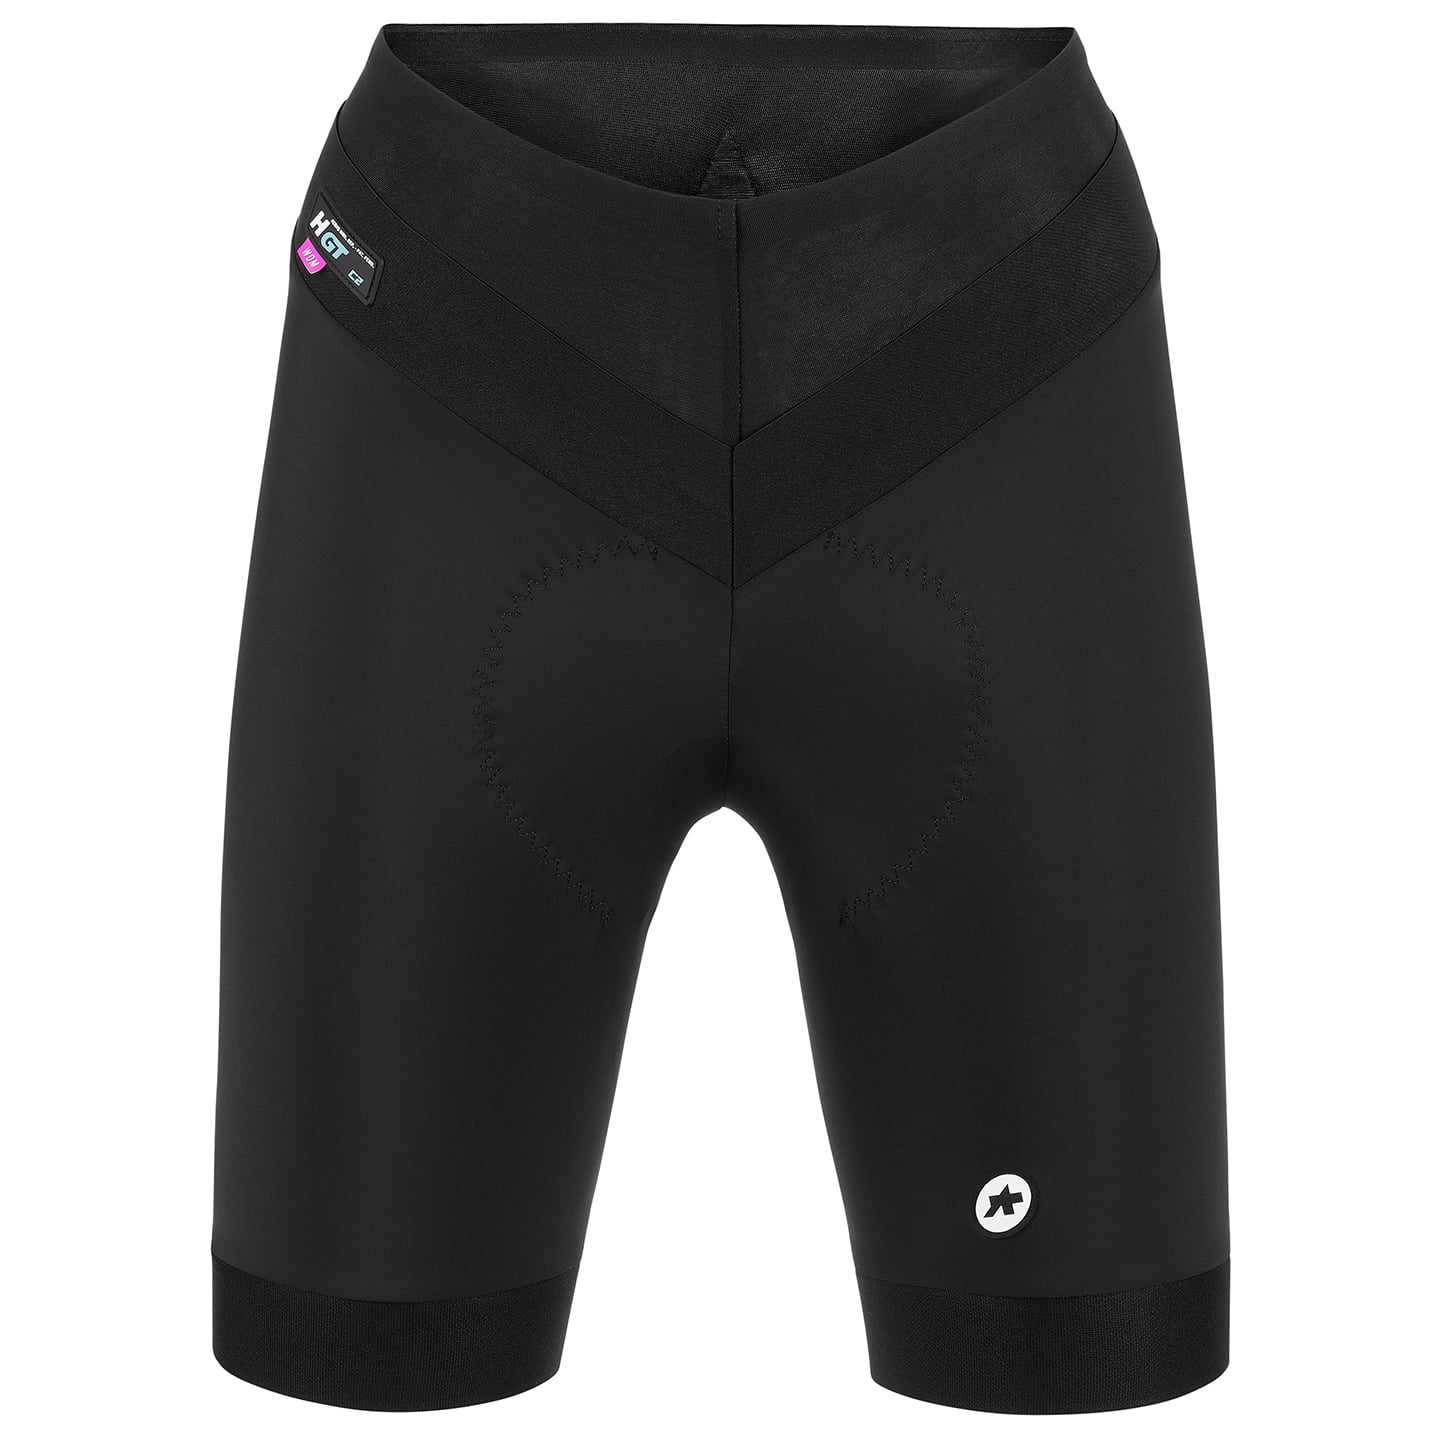 ASSOS UMA GT C2 - short Women’s Cycling Trousers Women’s Cycling Shorts, size XL, Cycle trousers, Cycle gear